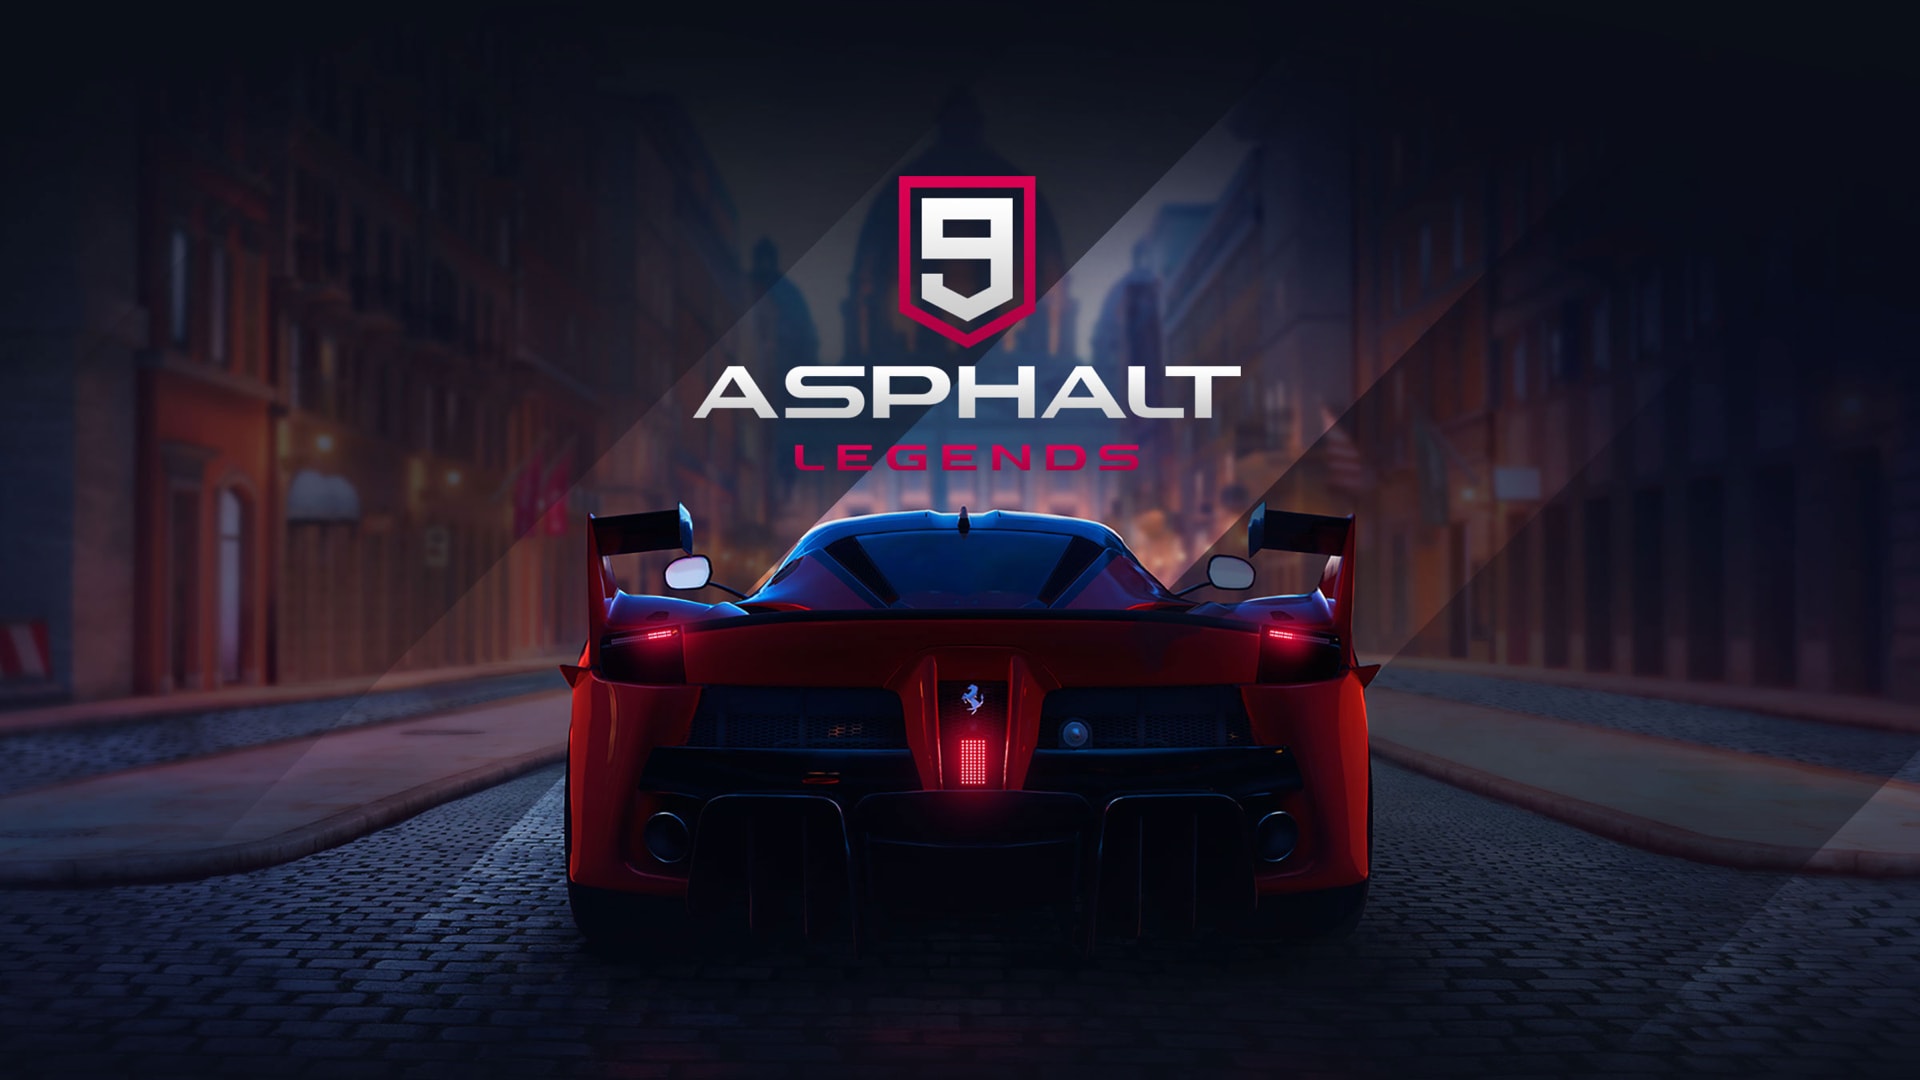 asphalt, video game, asphalt 9: legends